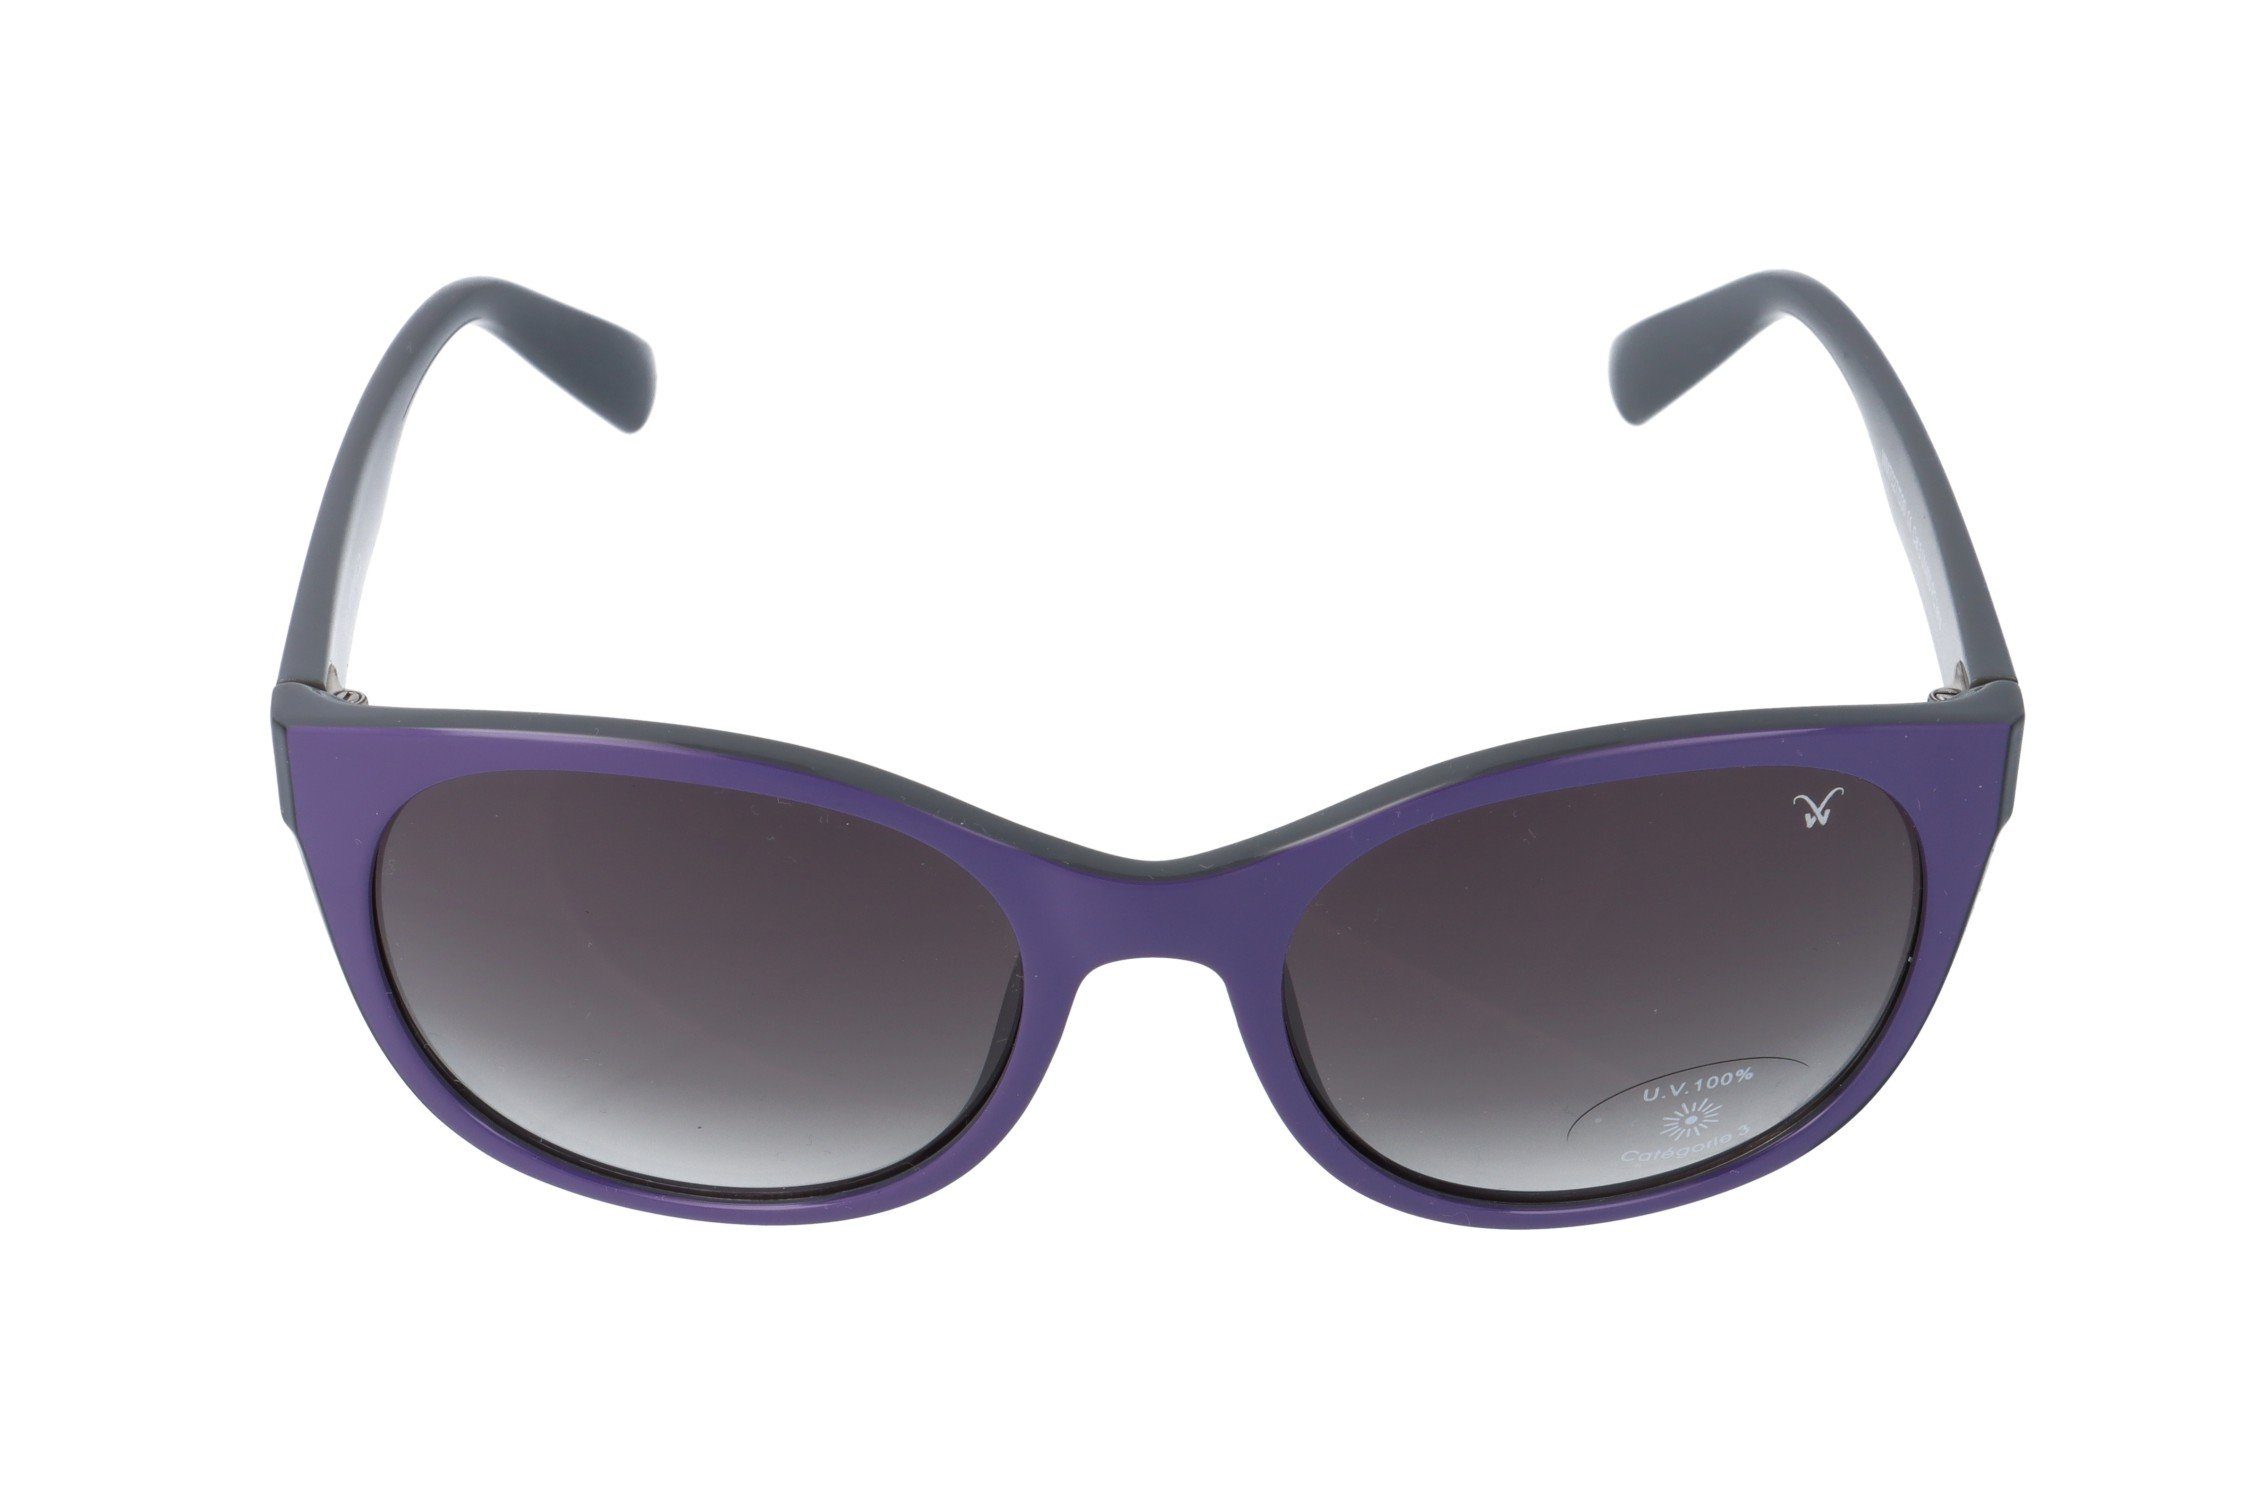 Gamswild Sonnenbrille WM7027 GAMSSTYLE schwarz lila / Unisex beige, Damen Herren lila, schwarz Mode - Brille Cat-Eye lila_komplett 